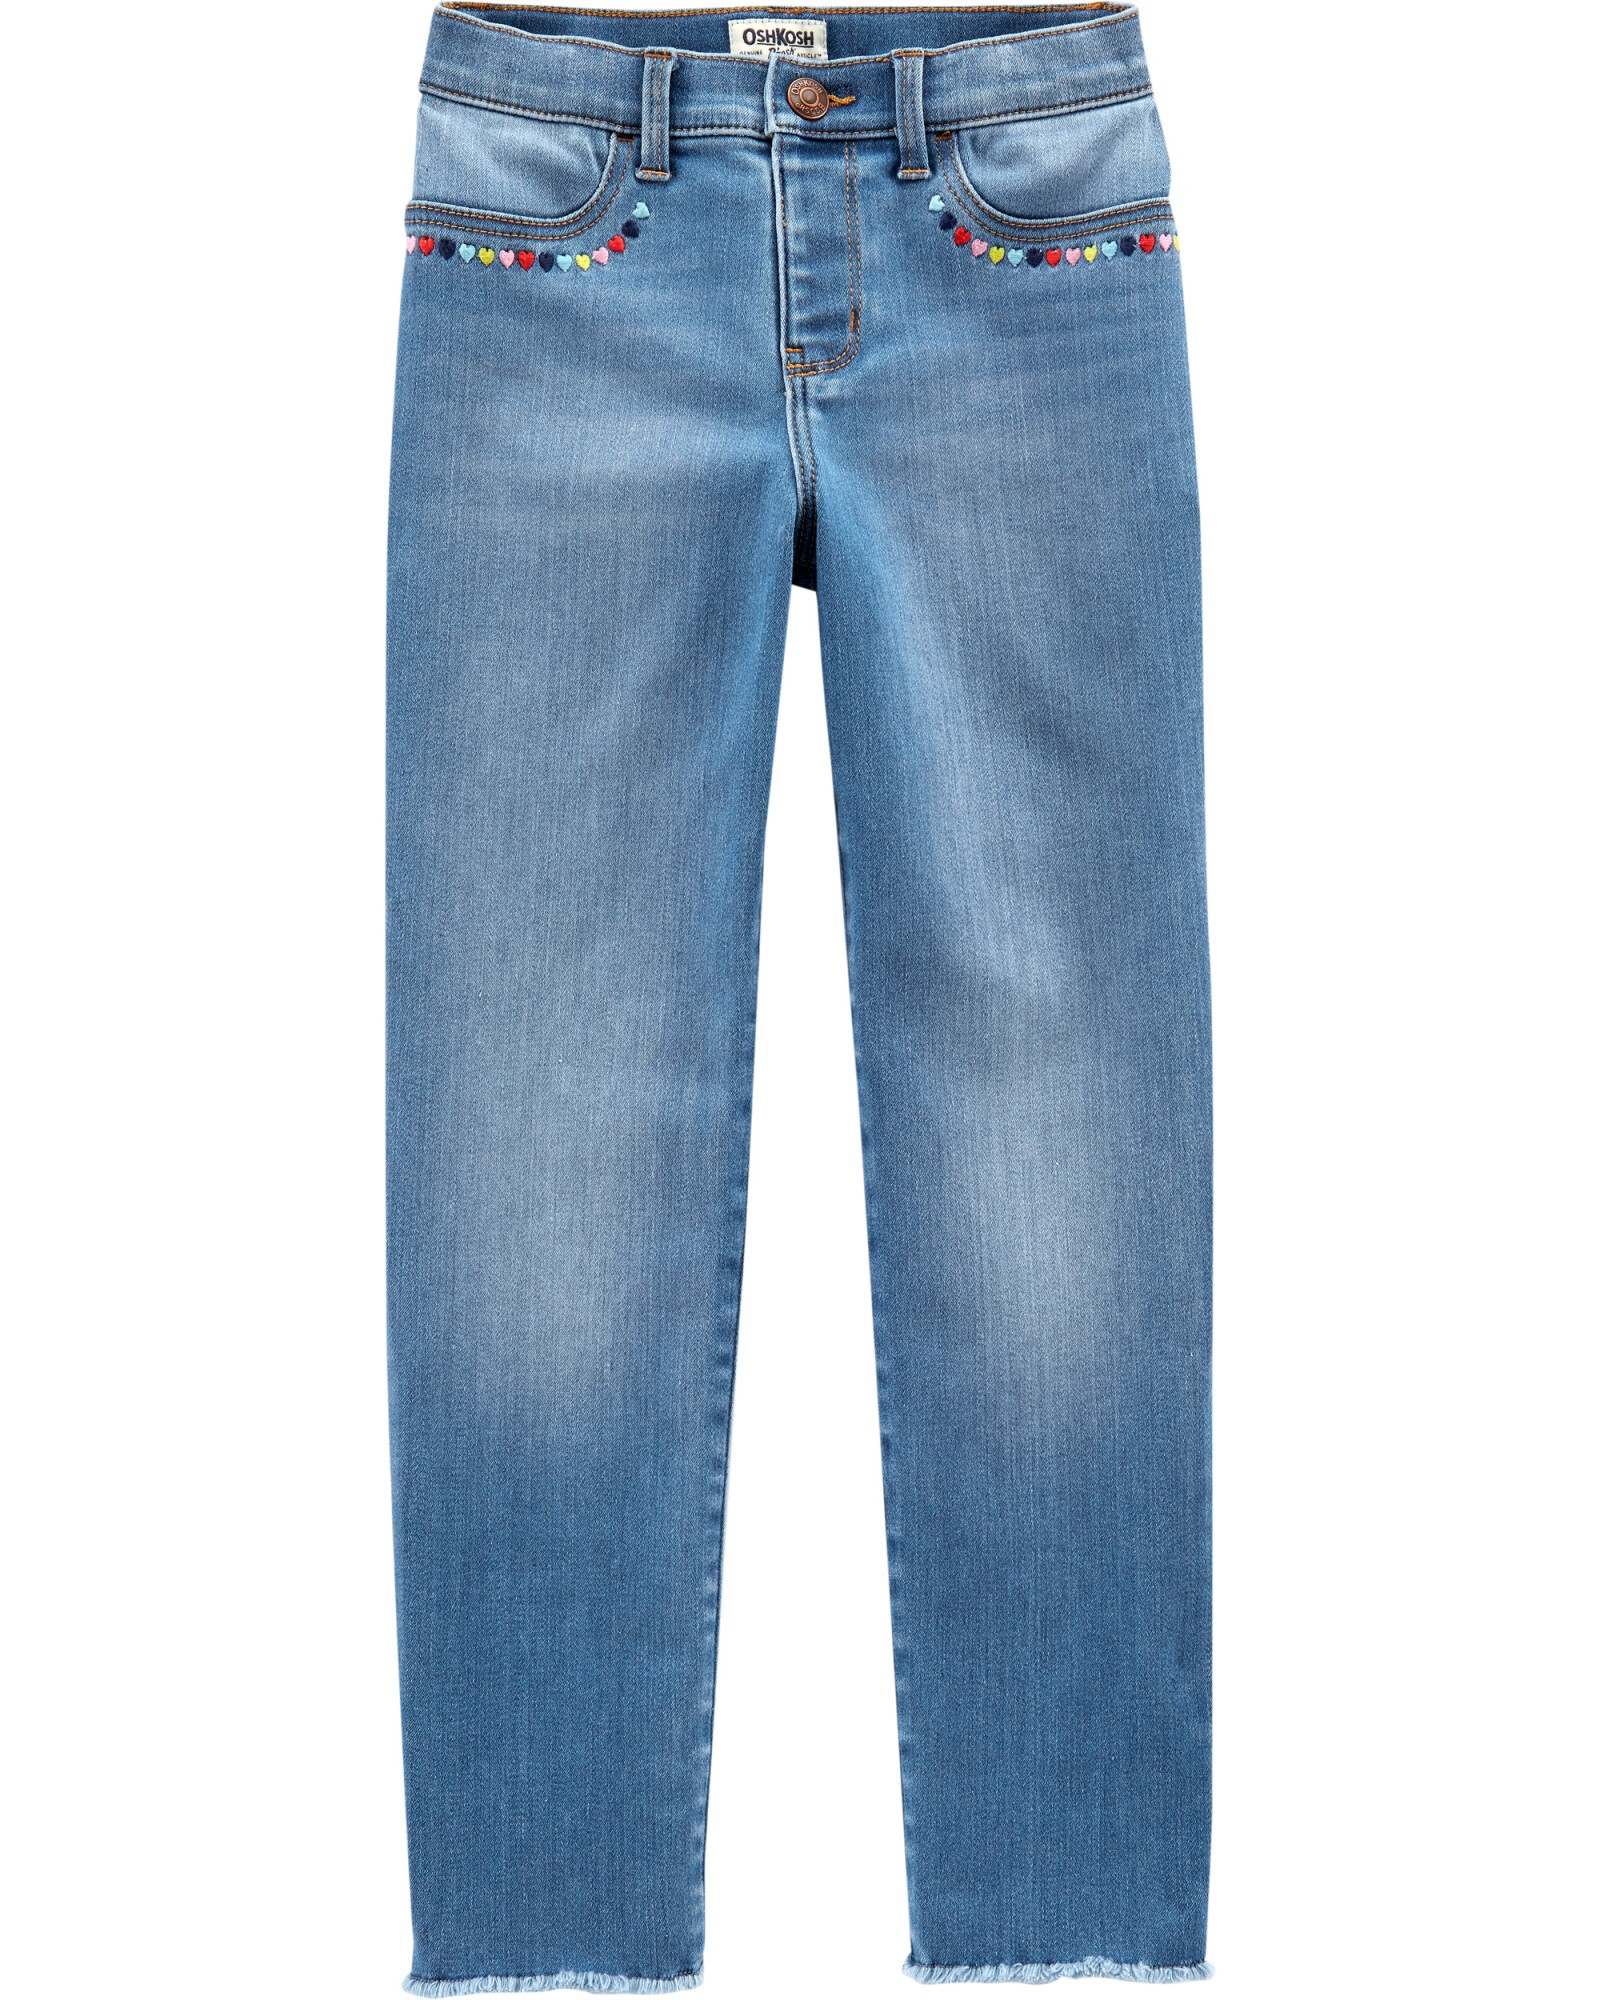 Pantalón de jean con detalle bordado. Talles 5T-14 Sin color